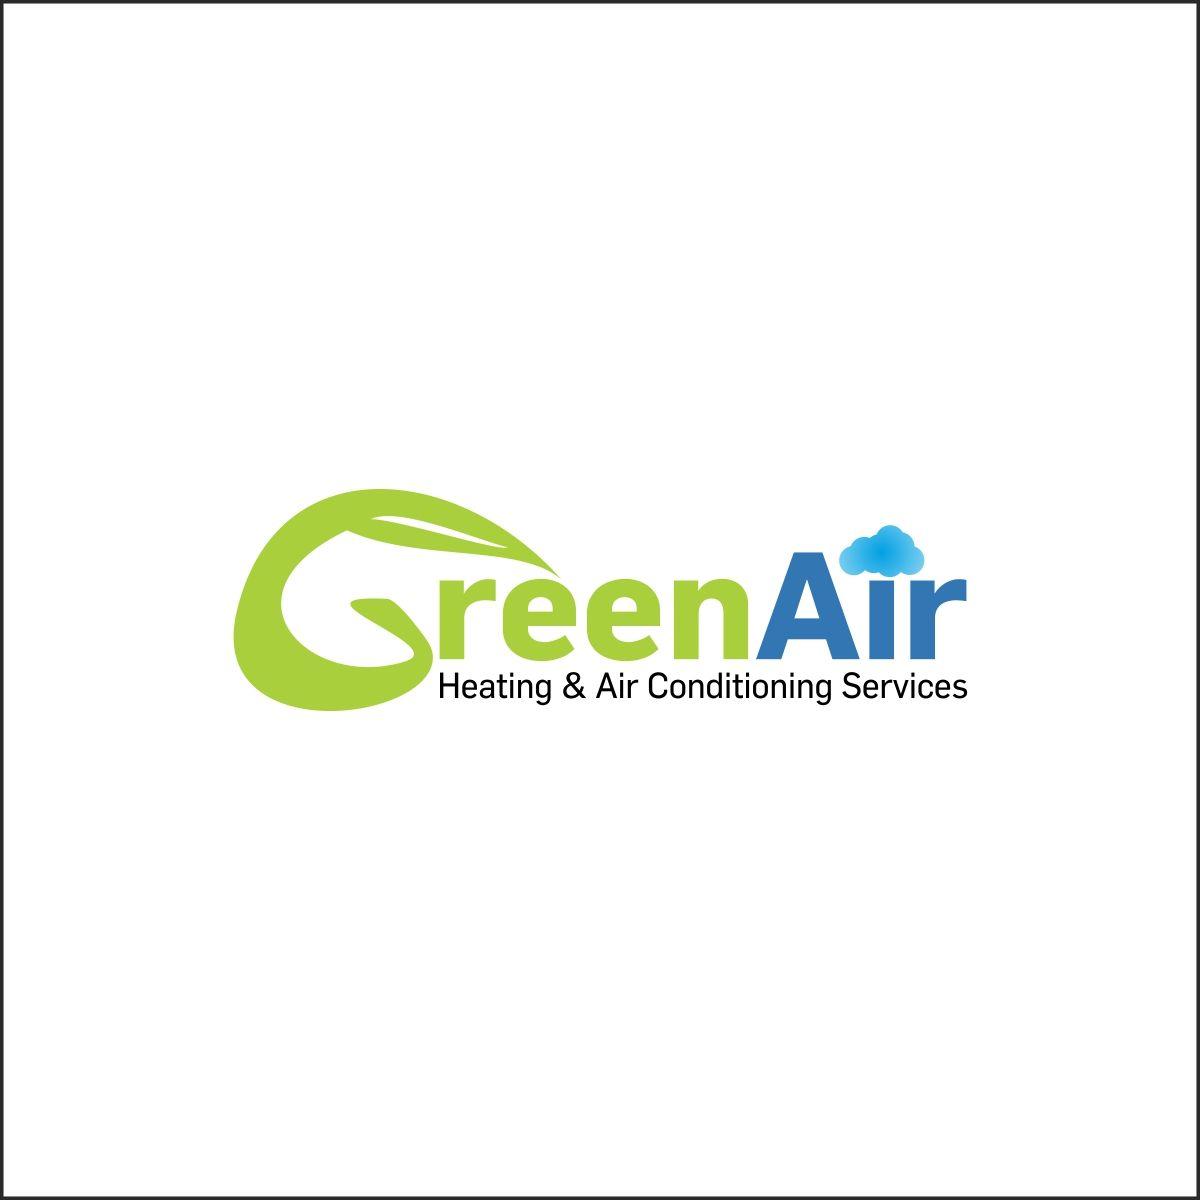 Green Air Logo - Bold, Serious, Hvac Logo Design for Green Air, Heating & Air ...